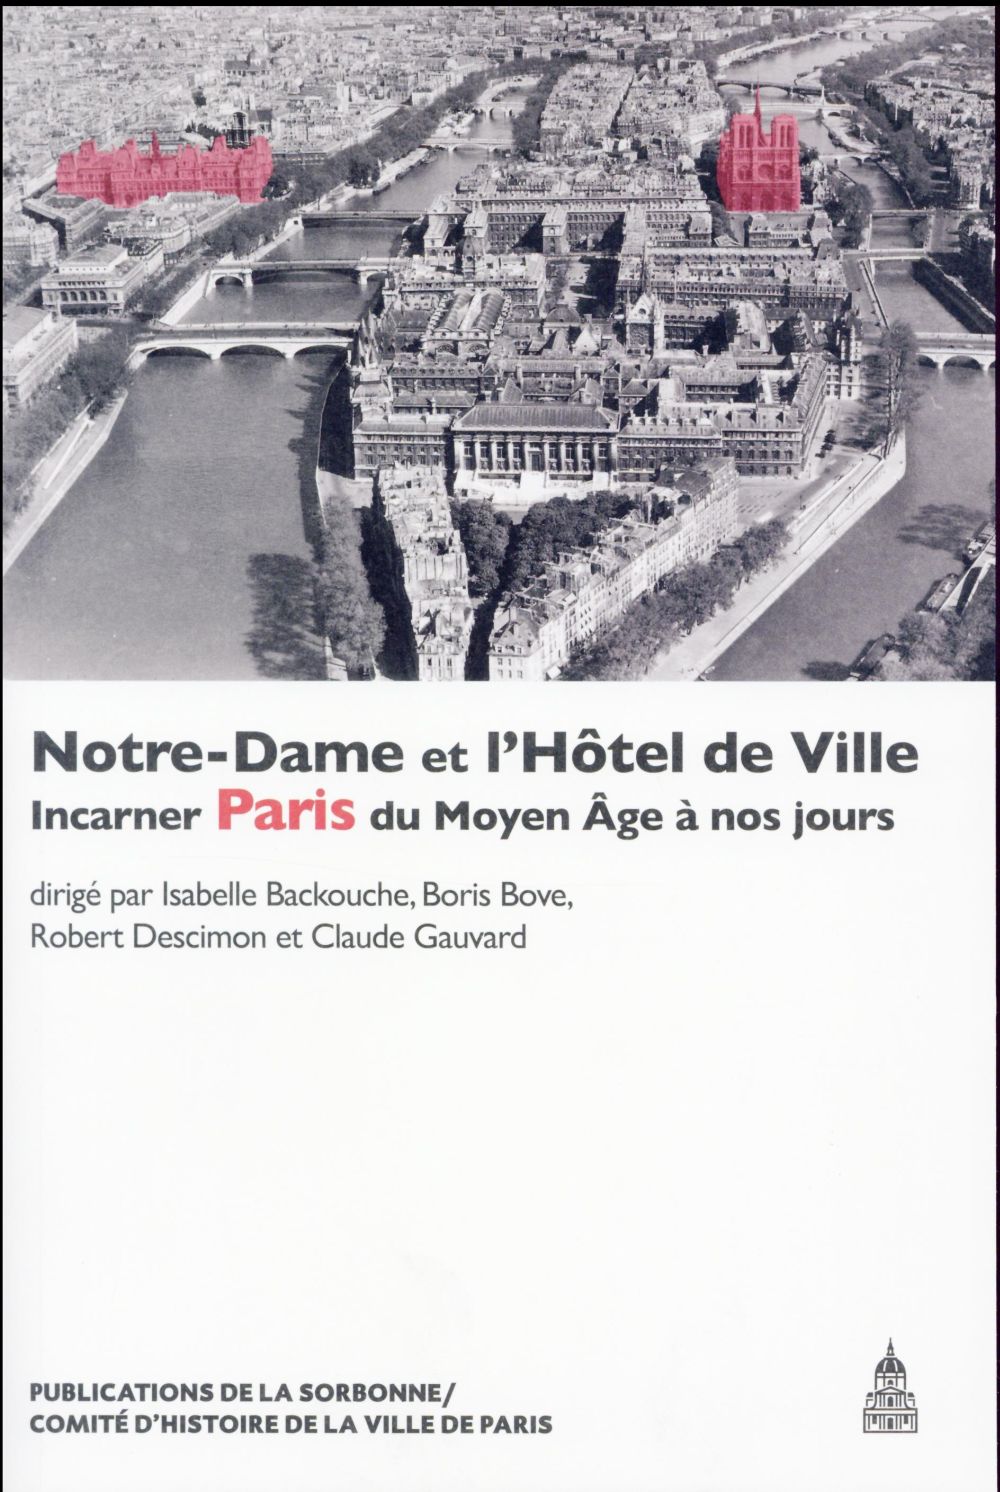 NOTRE-DAME ET L'HOTEL DE VILLE - INCARNER PARIS DU MOYEN AGE A NOS JOURS